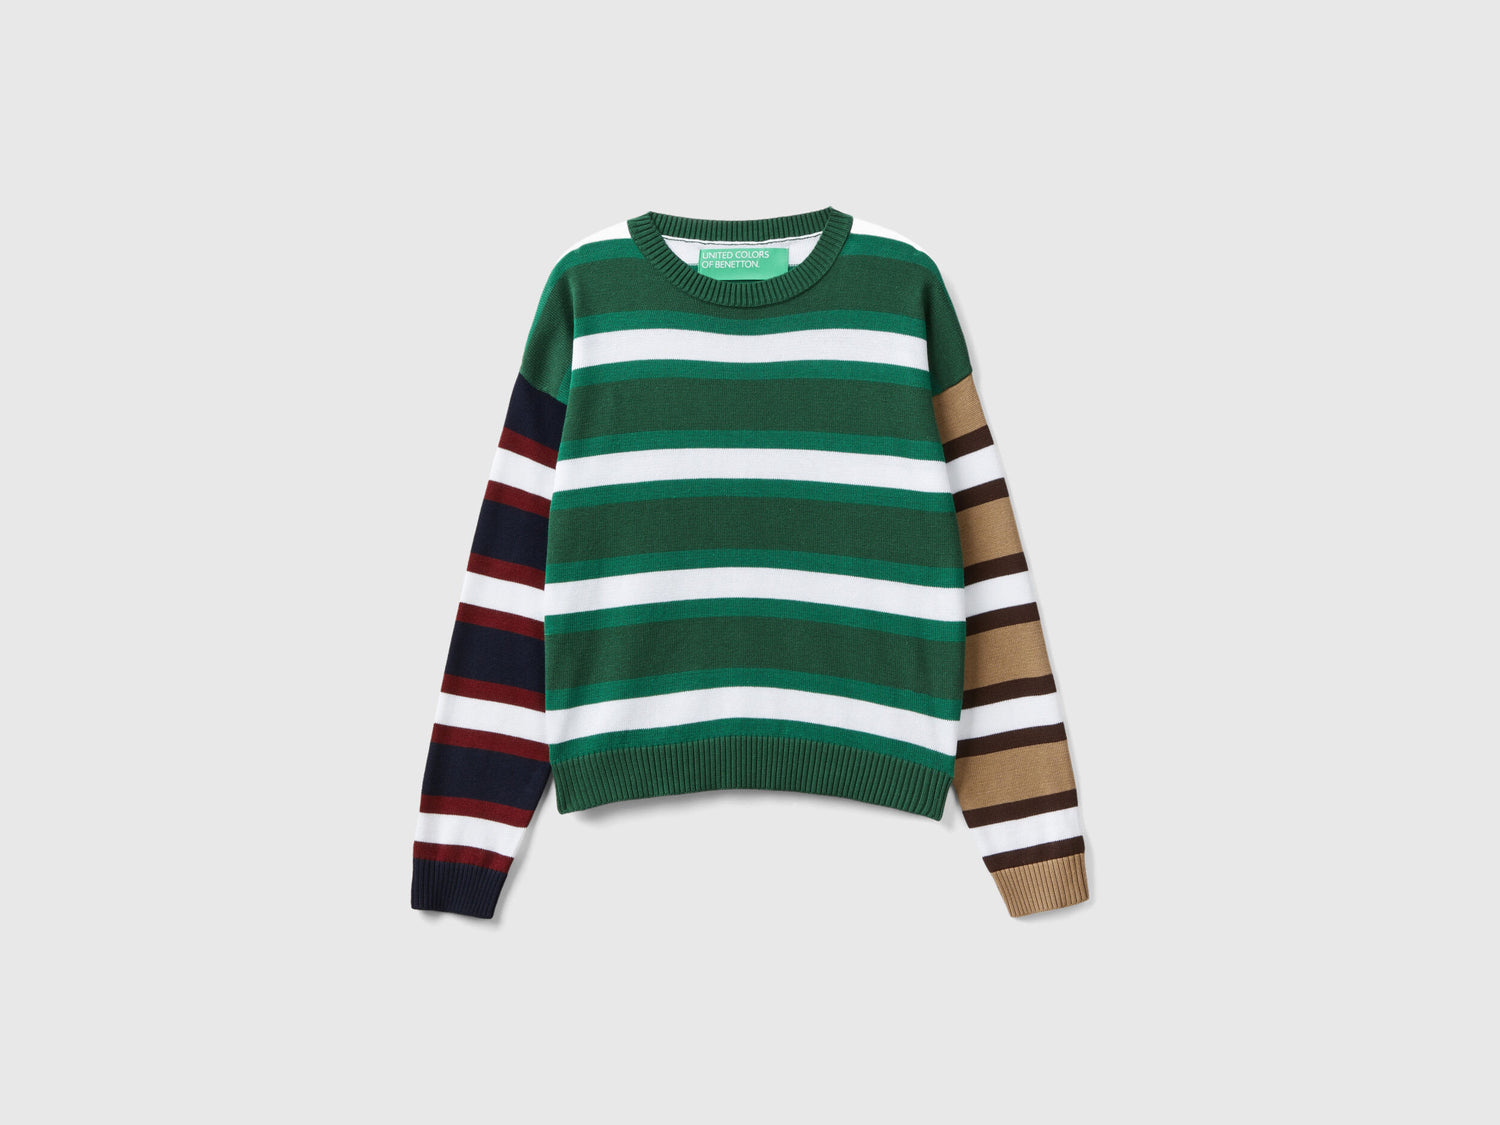 Striped Sweater In Pure Cotton_1298E1069_2E5_04